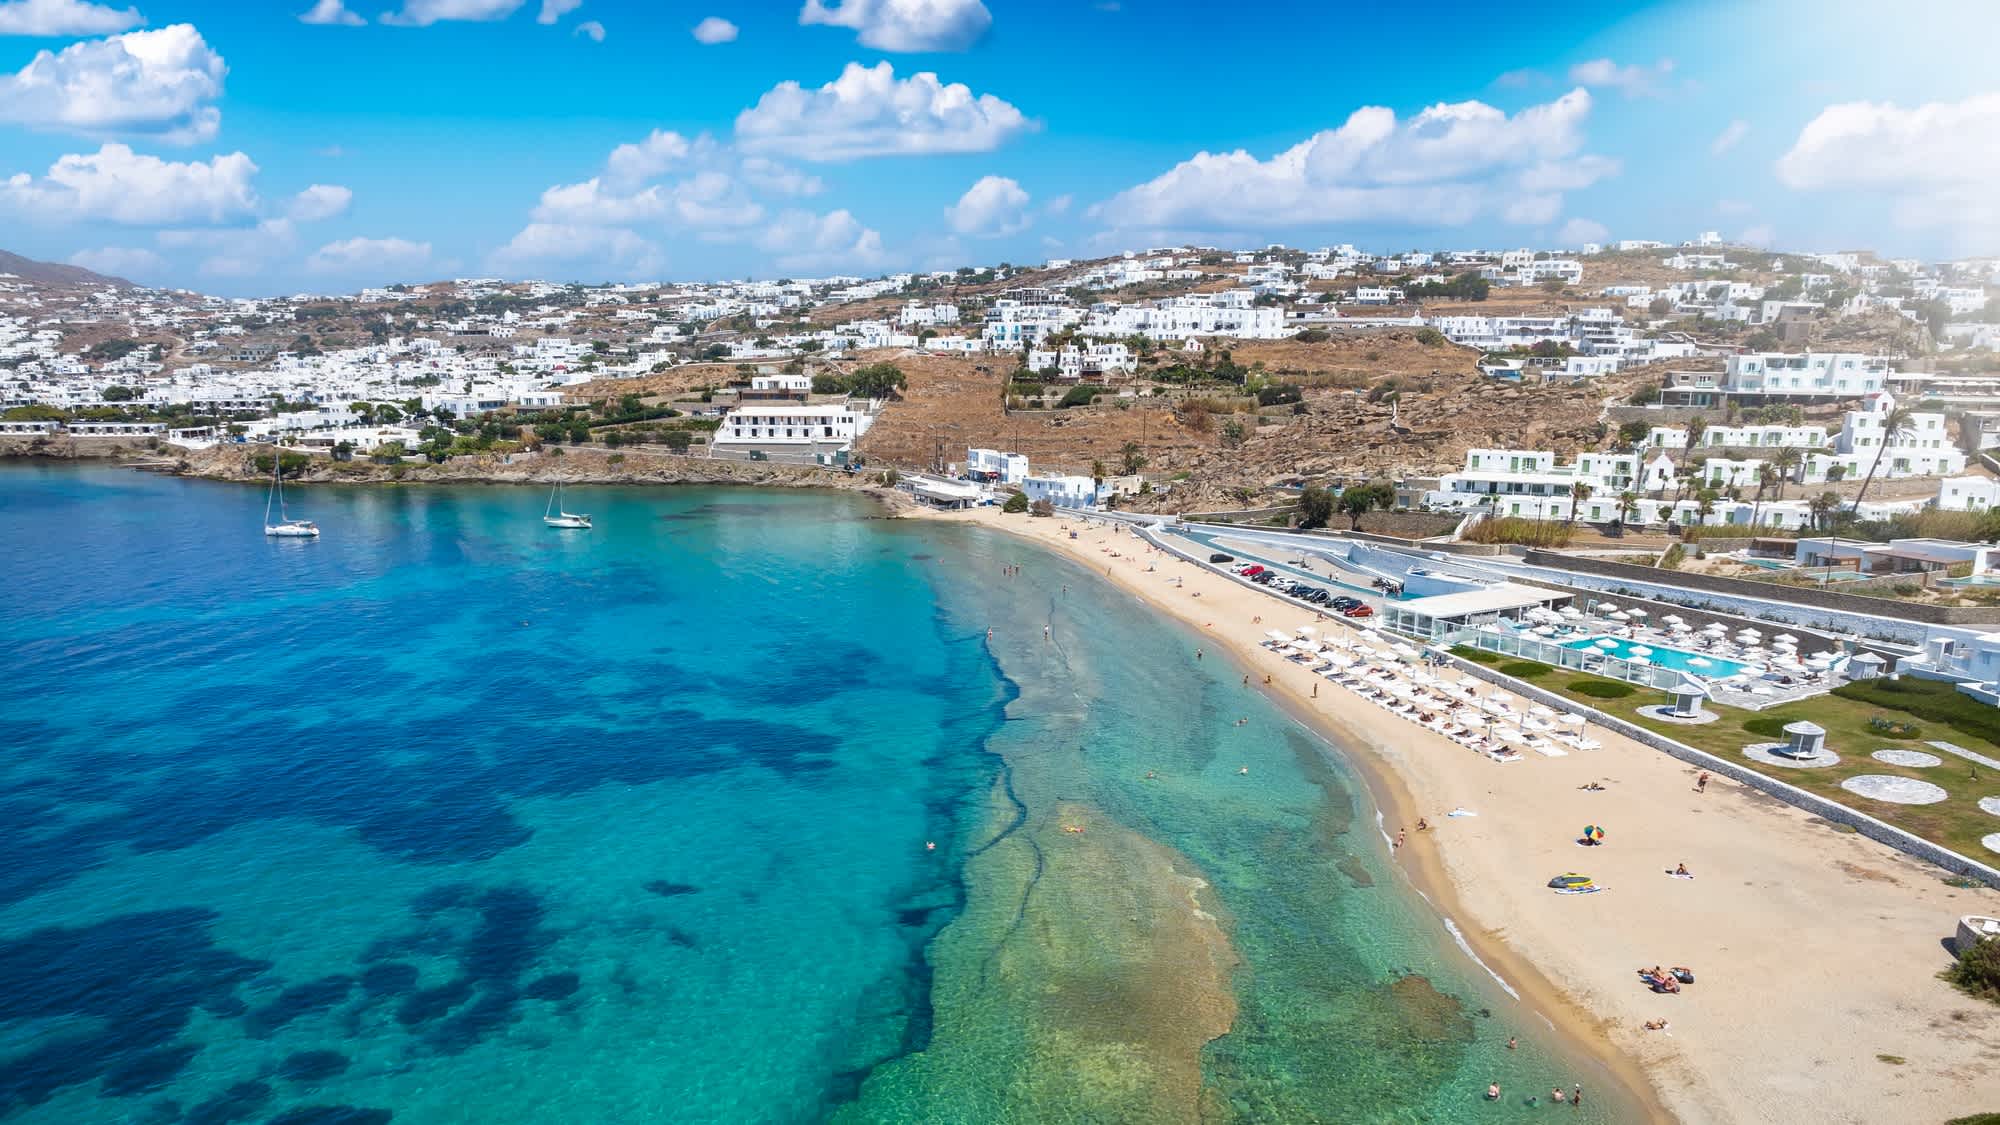 Vue aérienne de la plage de Megali Ammos à côté de la ville de Mykonos, en Grèce.

